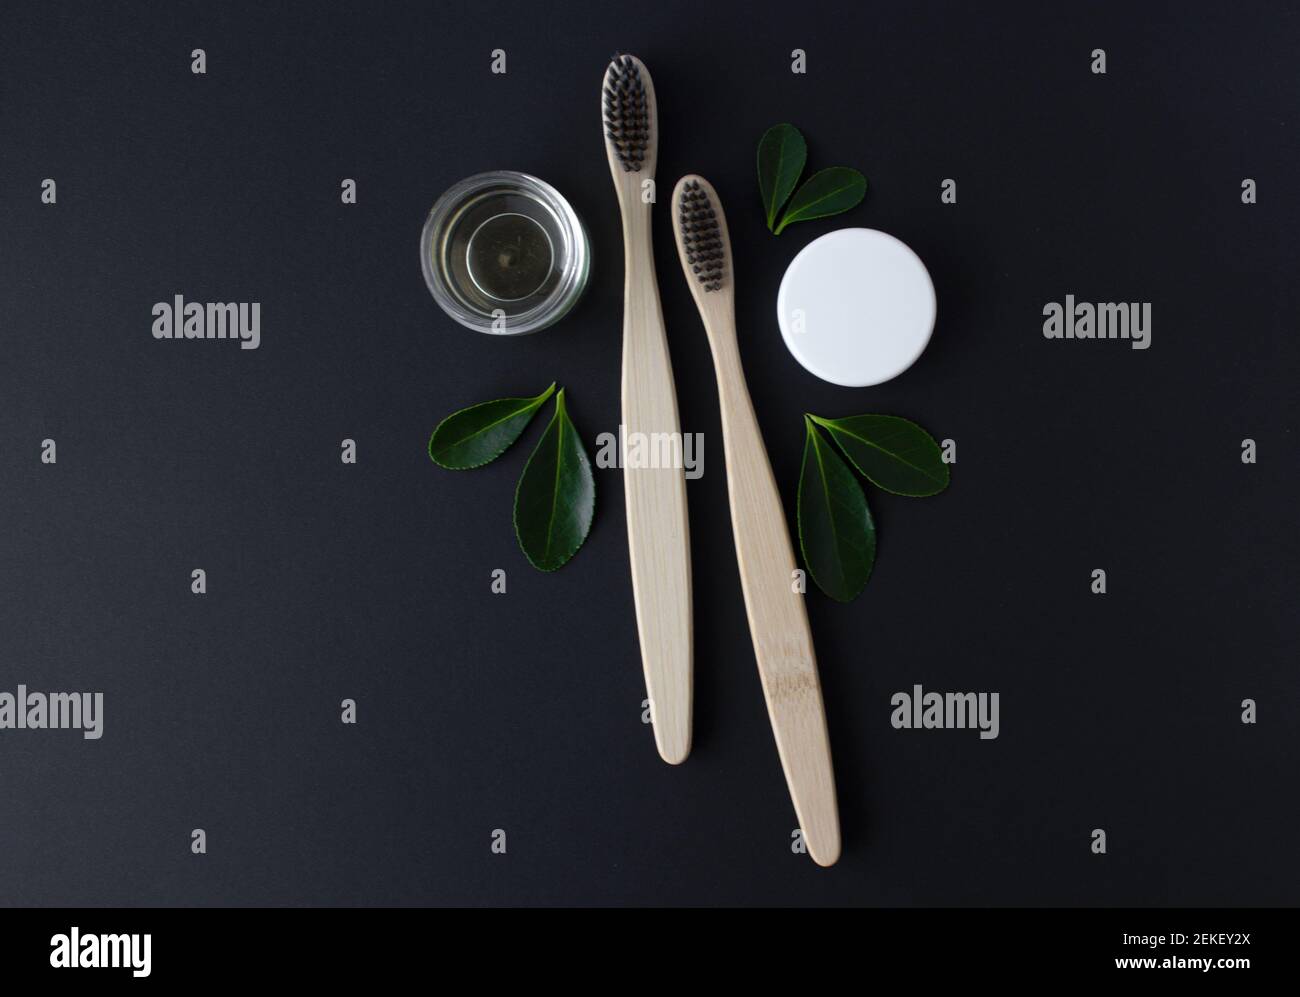 deux brosses à dents écologiques en bambou en bois, dentifrice et feuilles vertes sur fond noir. Banque D'Images